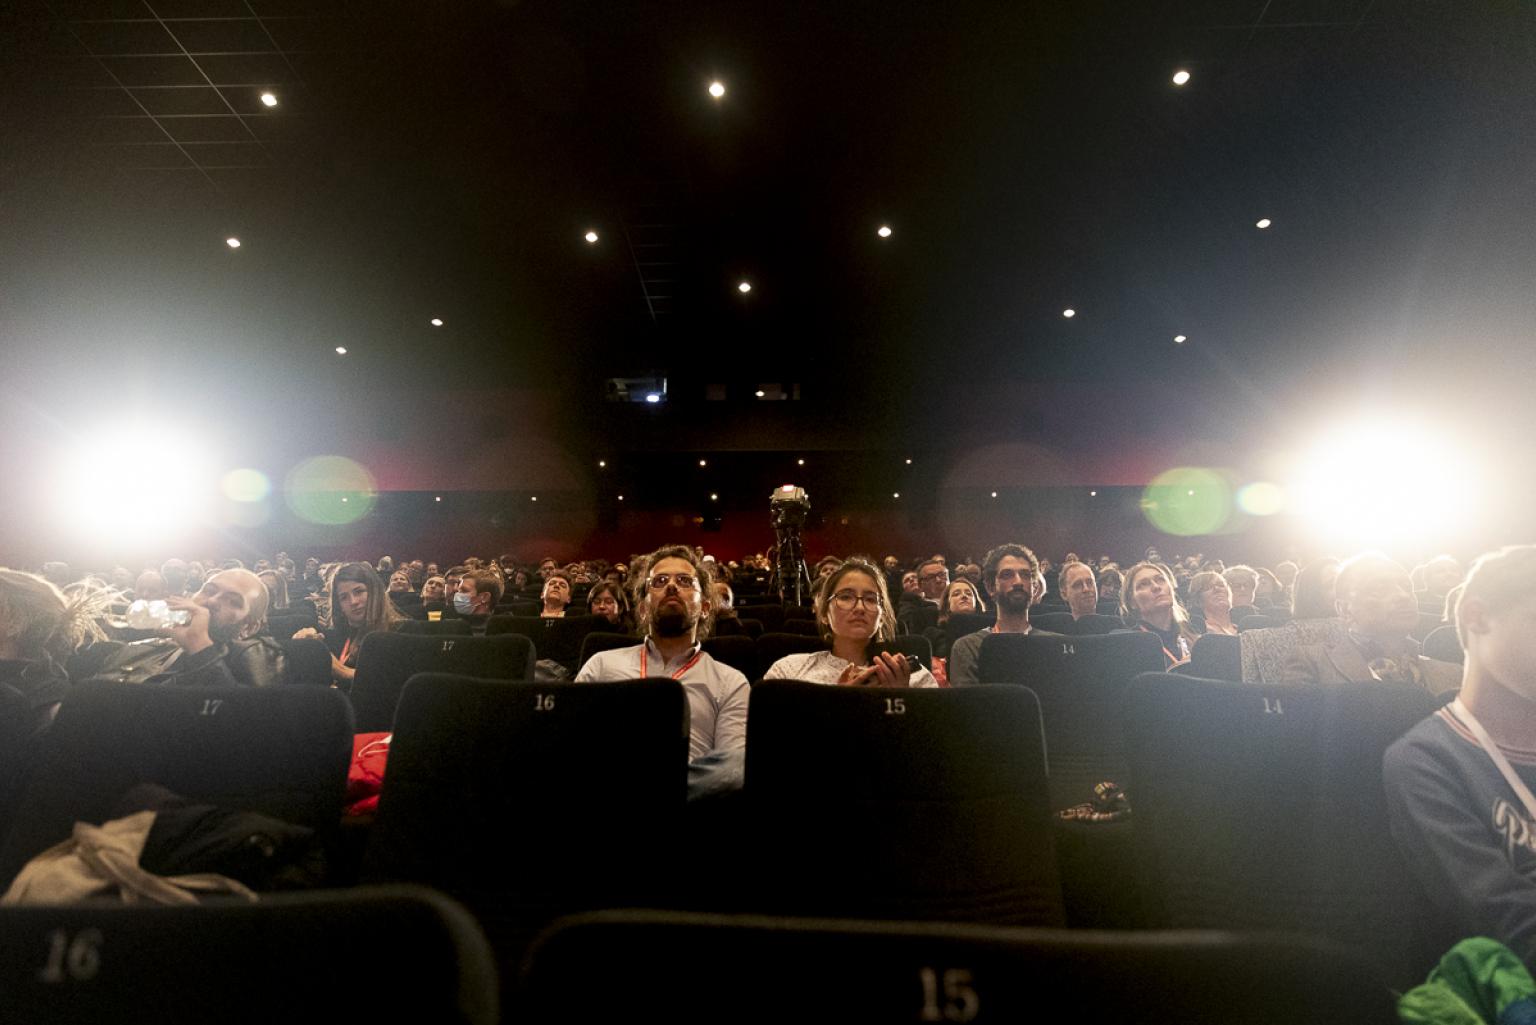 Blick auf die aufsteigenden Sitzreihen eines Kinosaals im Gegenlicht. Fast alle Plätze sind belegt.